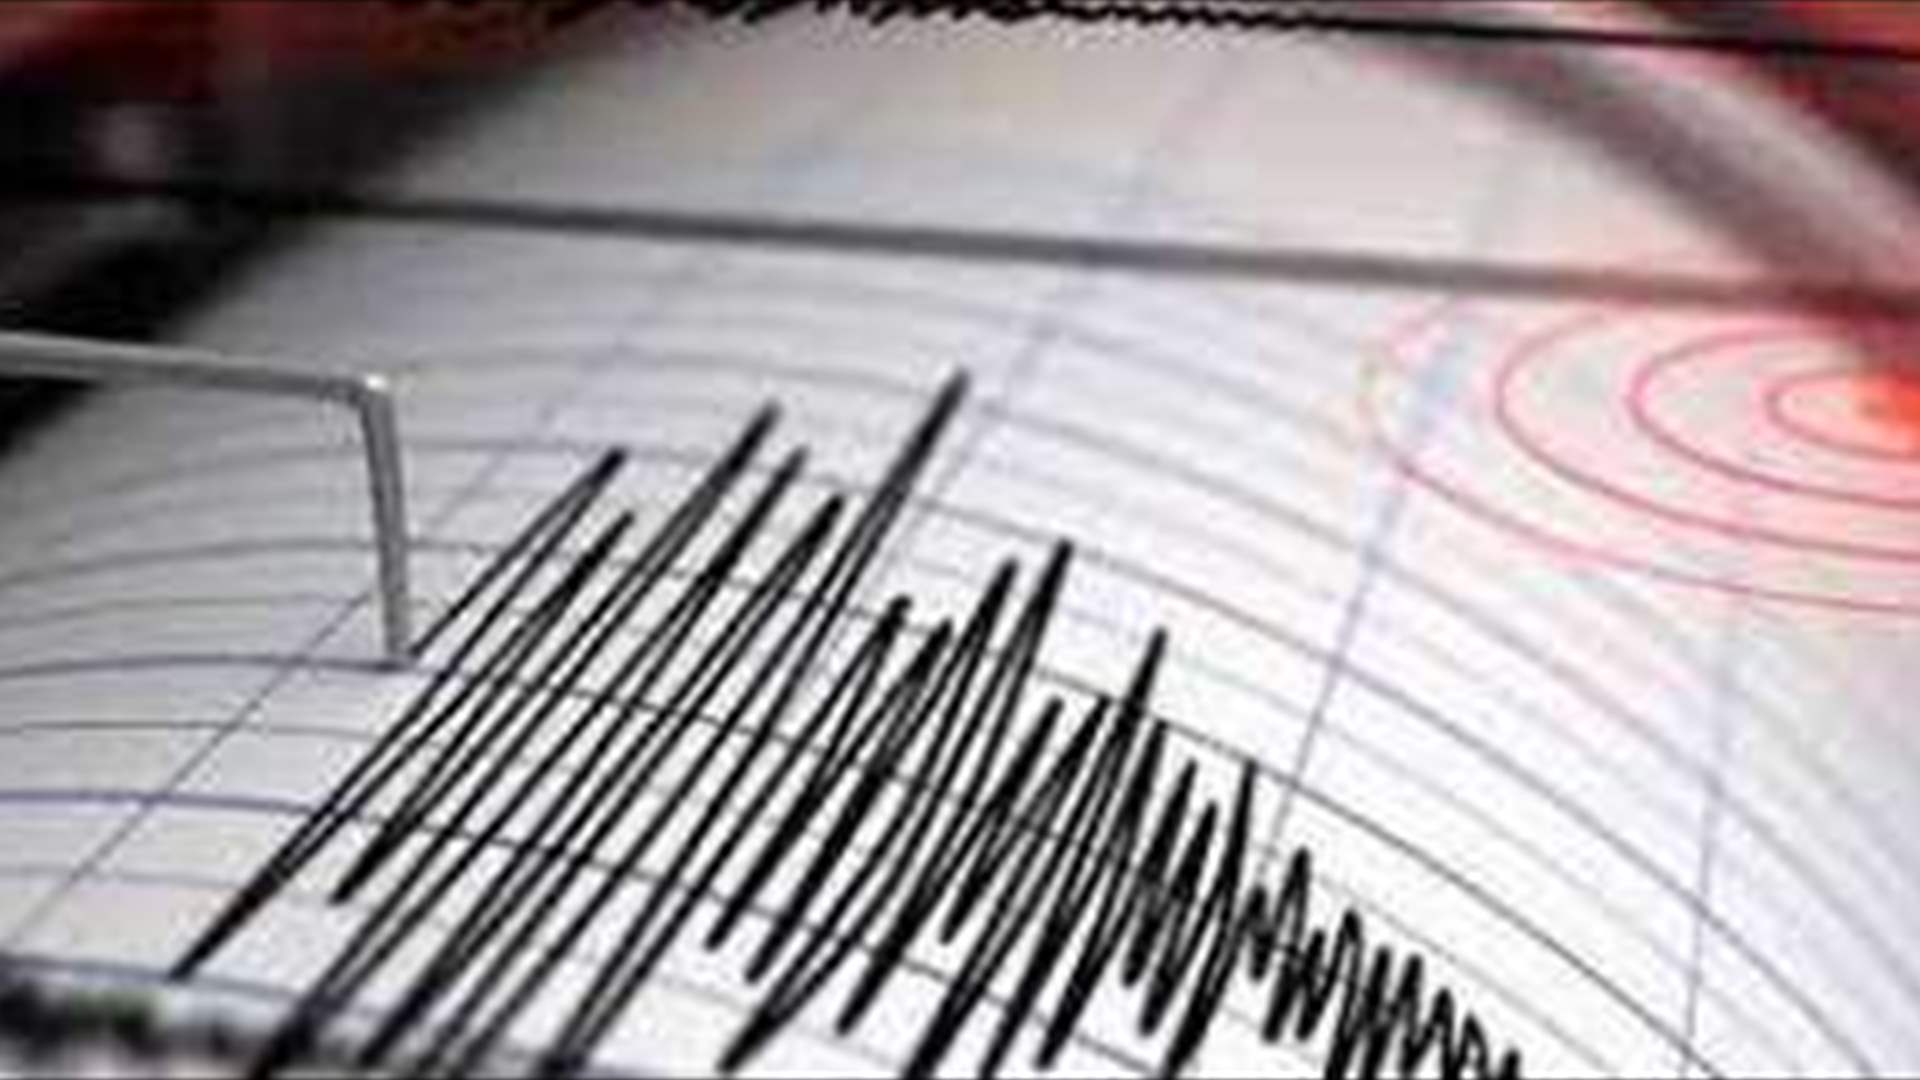 زلزال بقوة 4.1 درجات يضرب كهرمان مرعش التركية